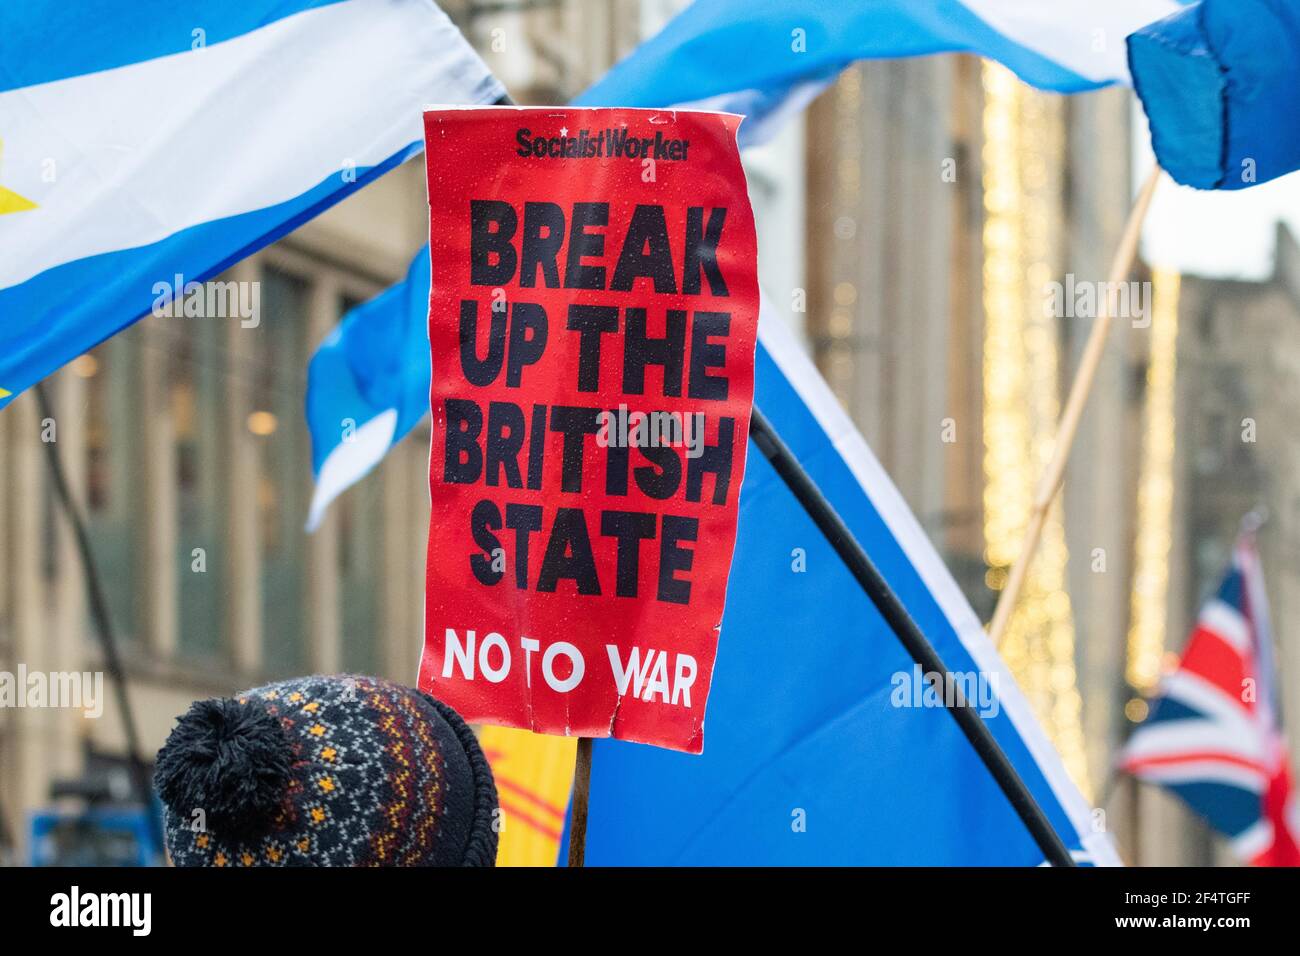 Rompere il cartello Stato britannico No to War - Socialisti Worker al scottish Independence march, Glasgow, Scotland, UK Foto Stock